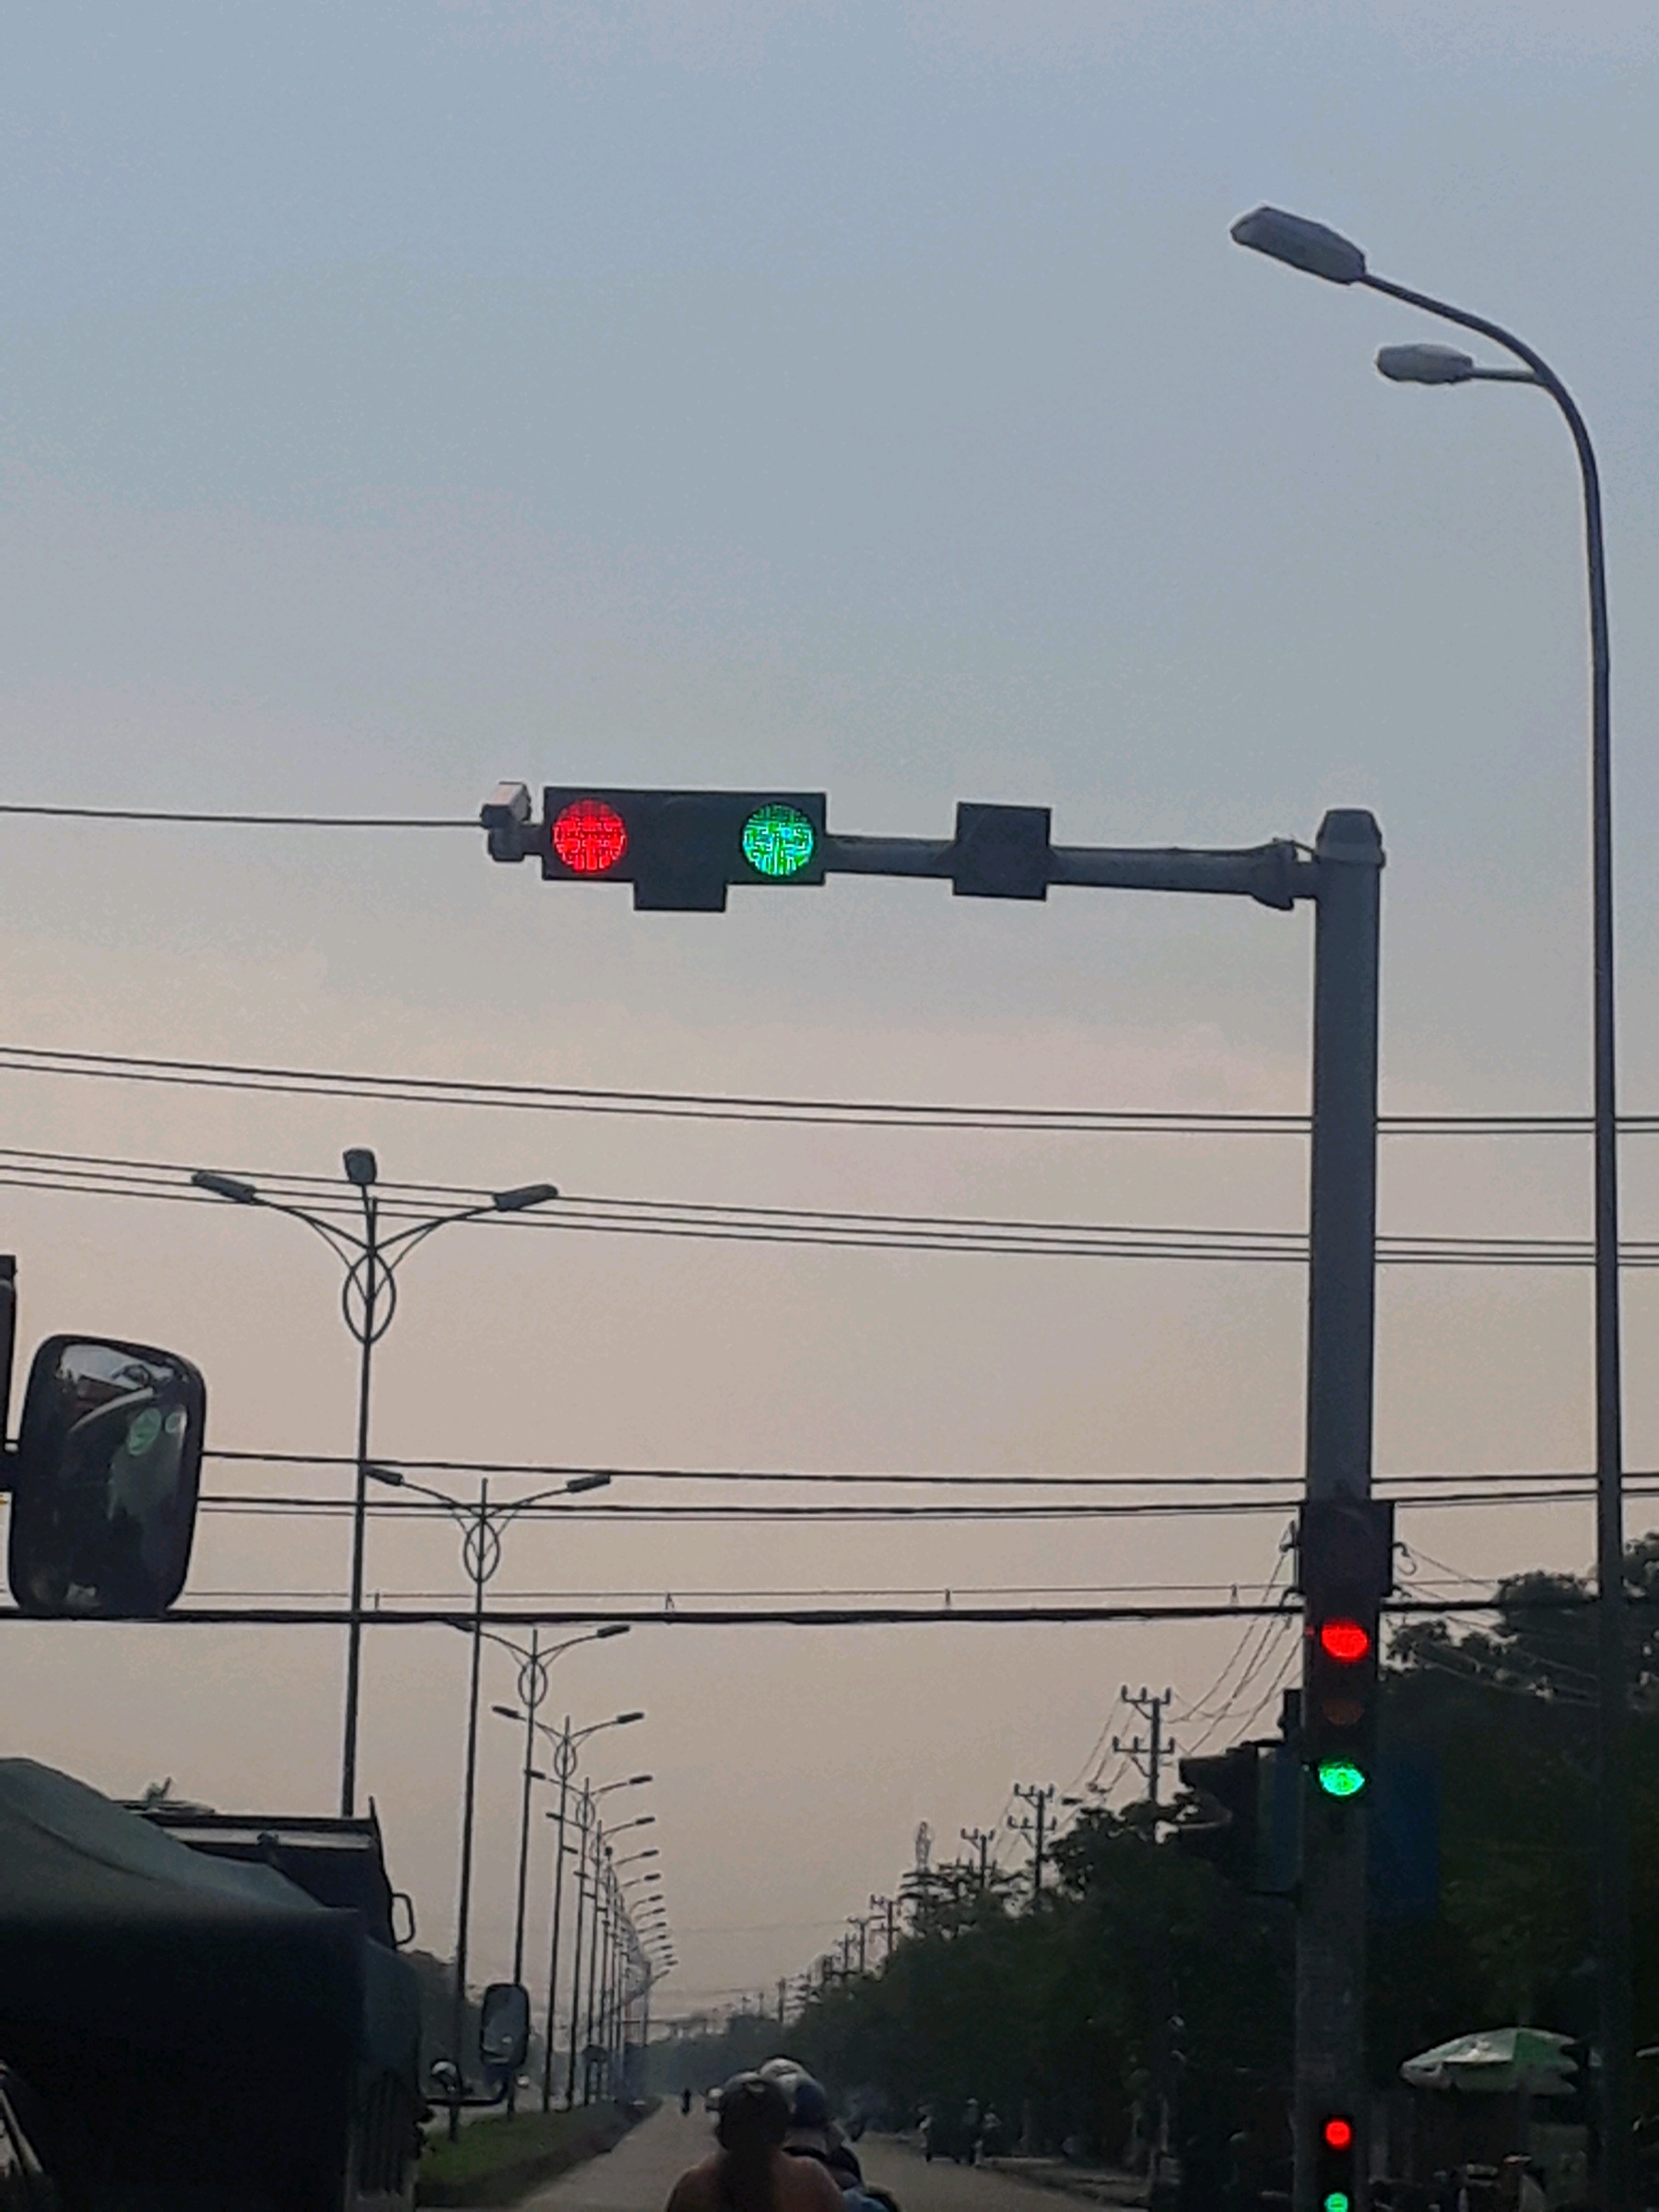 Đèn giao thông là trung tâm của sự an toàn giao thông. Hãy xem hình ảnh các đèn giao thông trên khắp thành phố và cùng nhau hiểu về vai trò quan trọng của chúng nhé!